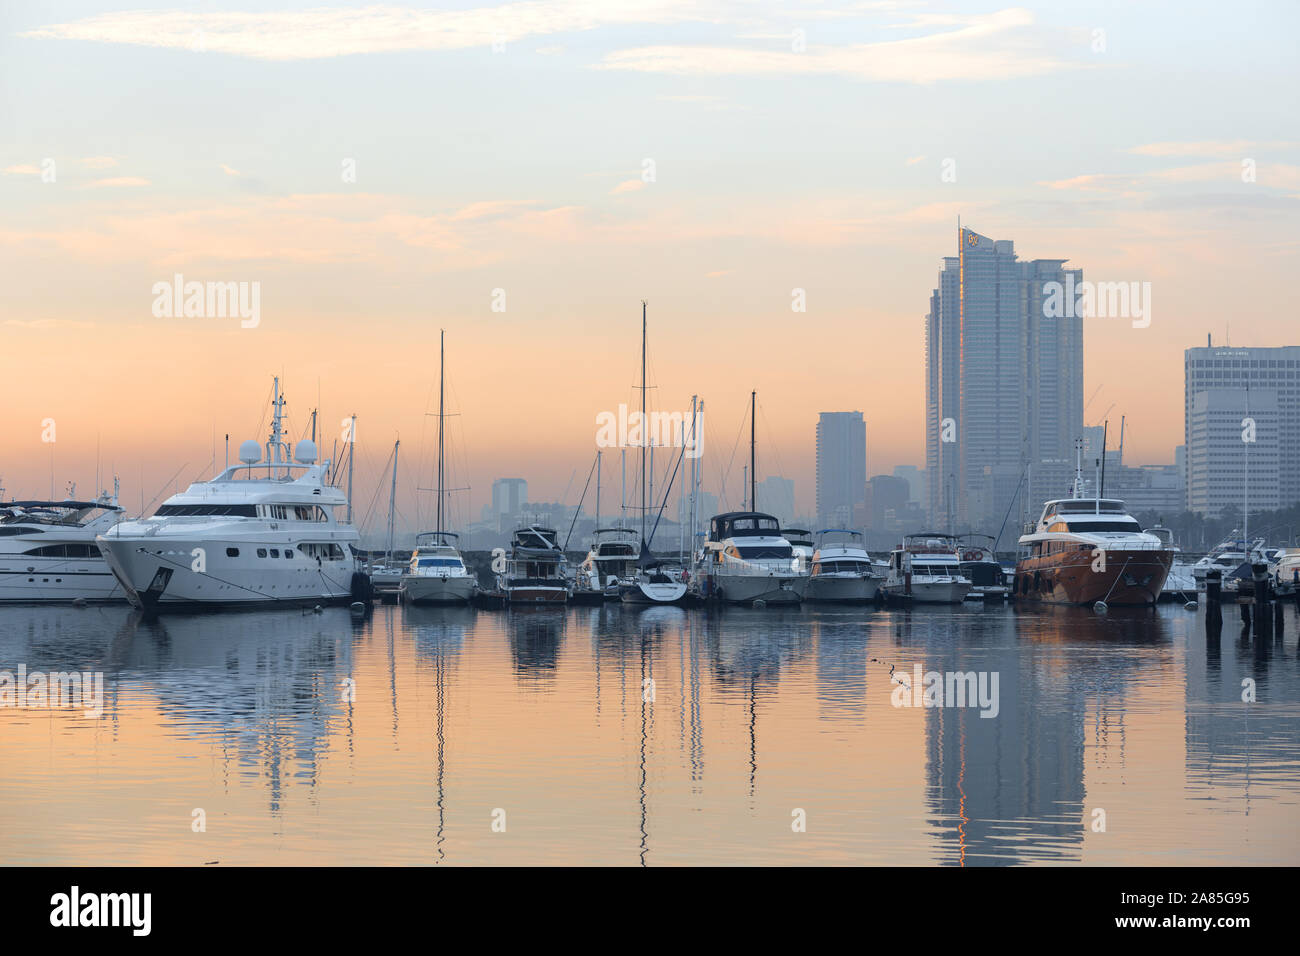 Manila, Philippinen - 26. Juni 2017: Sonnenuntergangs-Meereslandschaft der Bucht von Manila, die das Meer und die große Stadt dahinter reflektiert Stockfoto